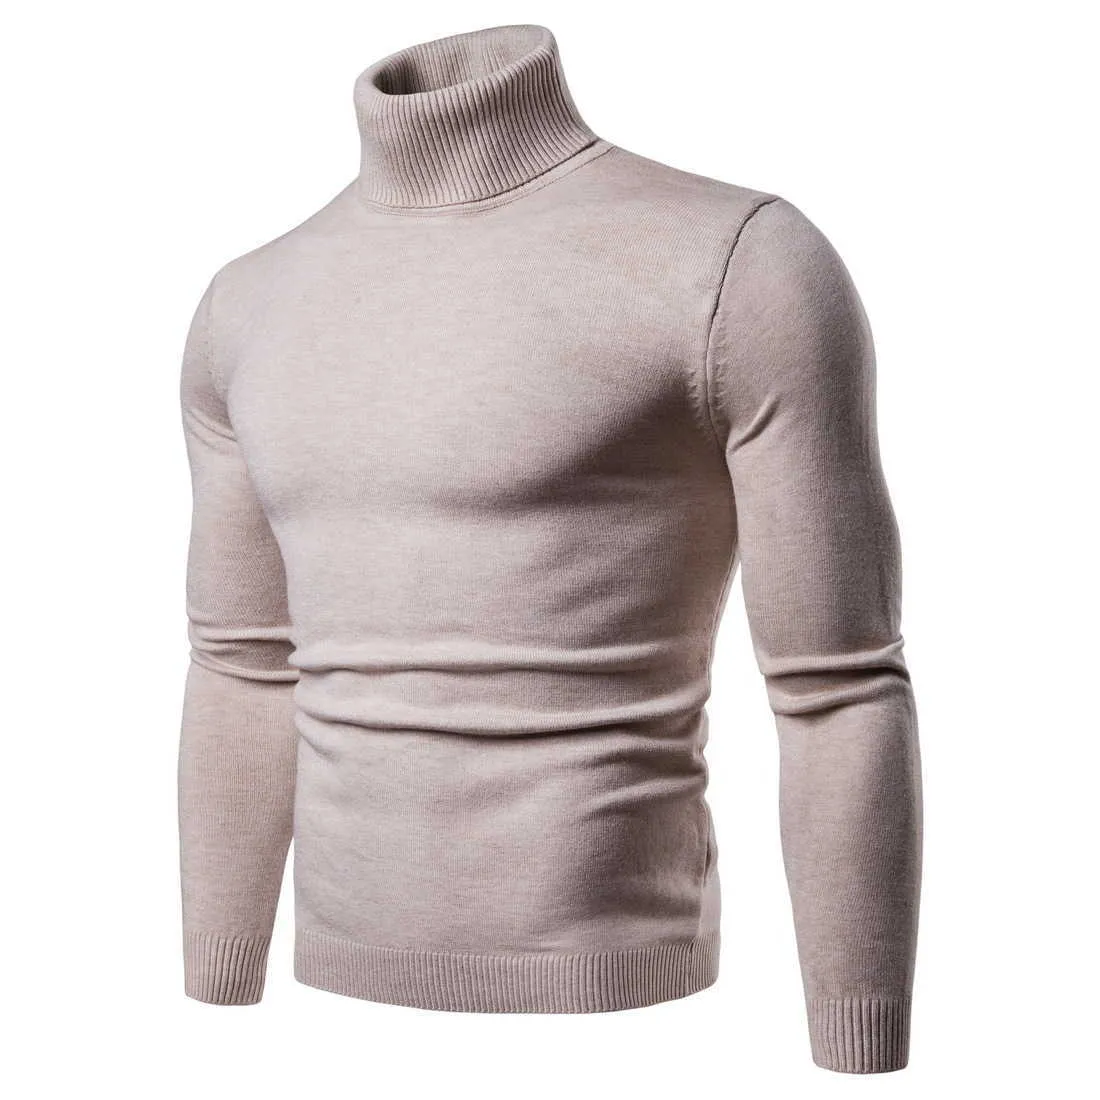 Favocent Winter Warm Coltrui Trui Mannen Mode Solid Gebreide Mens Sweaters 2020 Casual Mannelijke Dubbele Kraag Slanke Fit Pullover Y0907